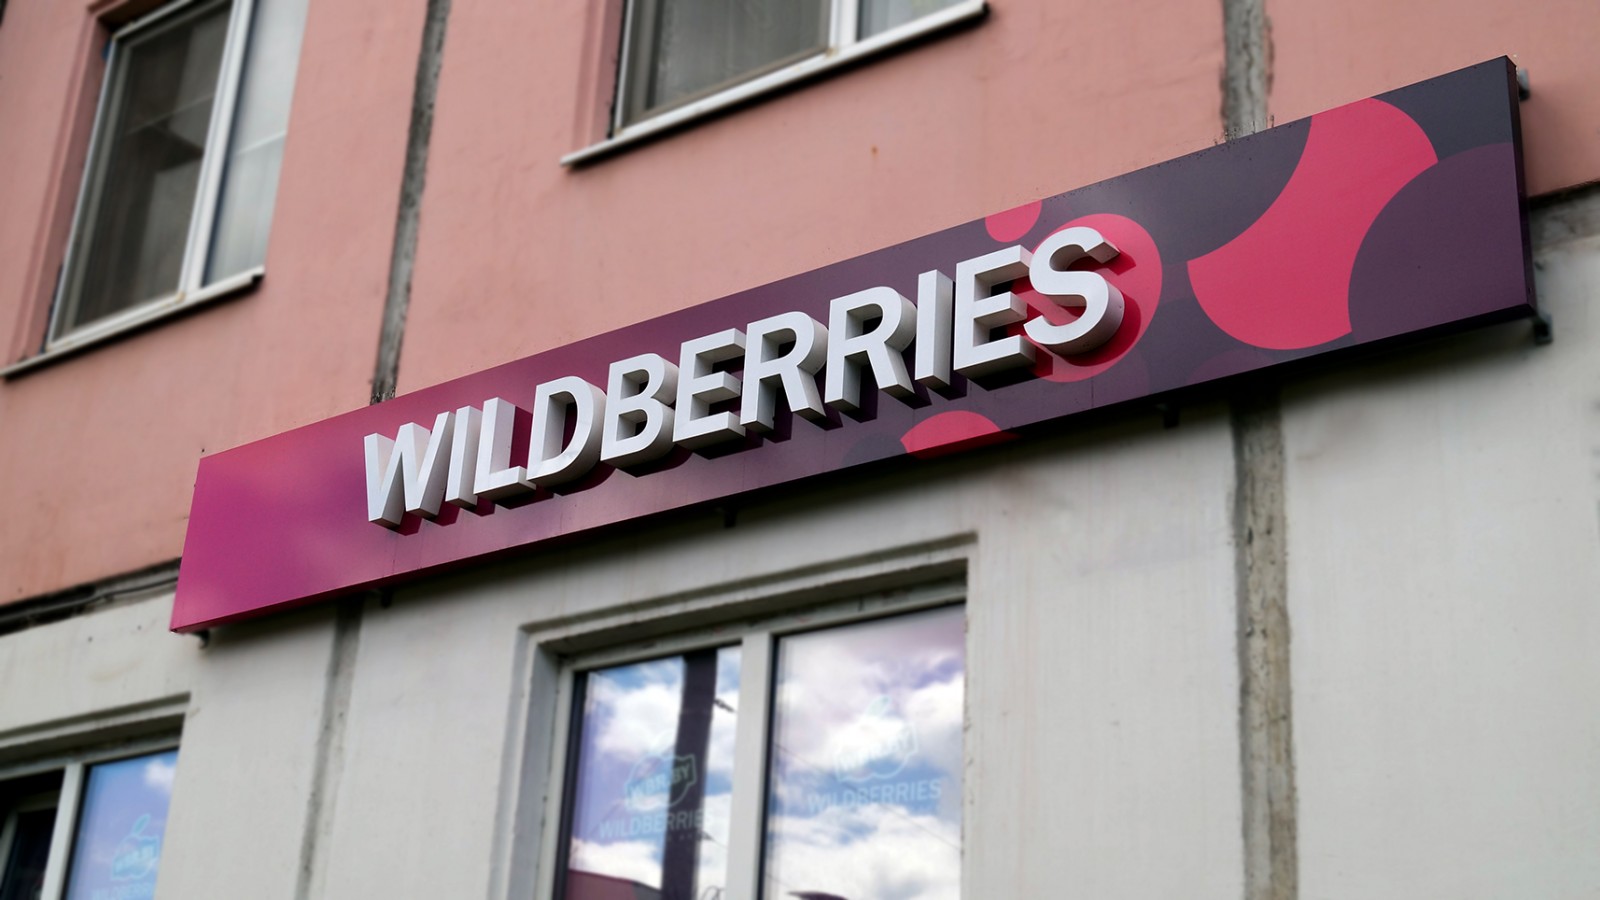 Wildberries Интернет Магазин Спасибо